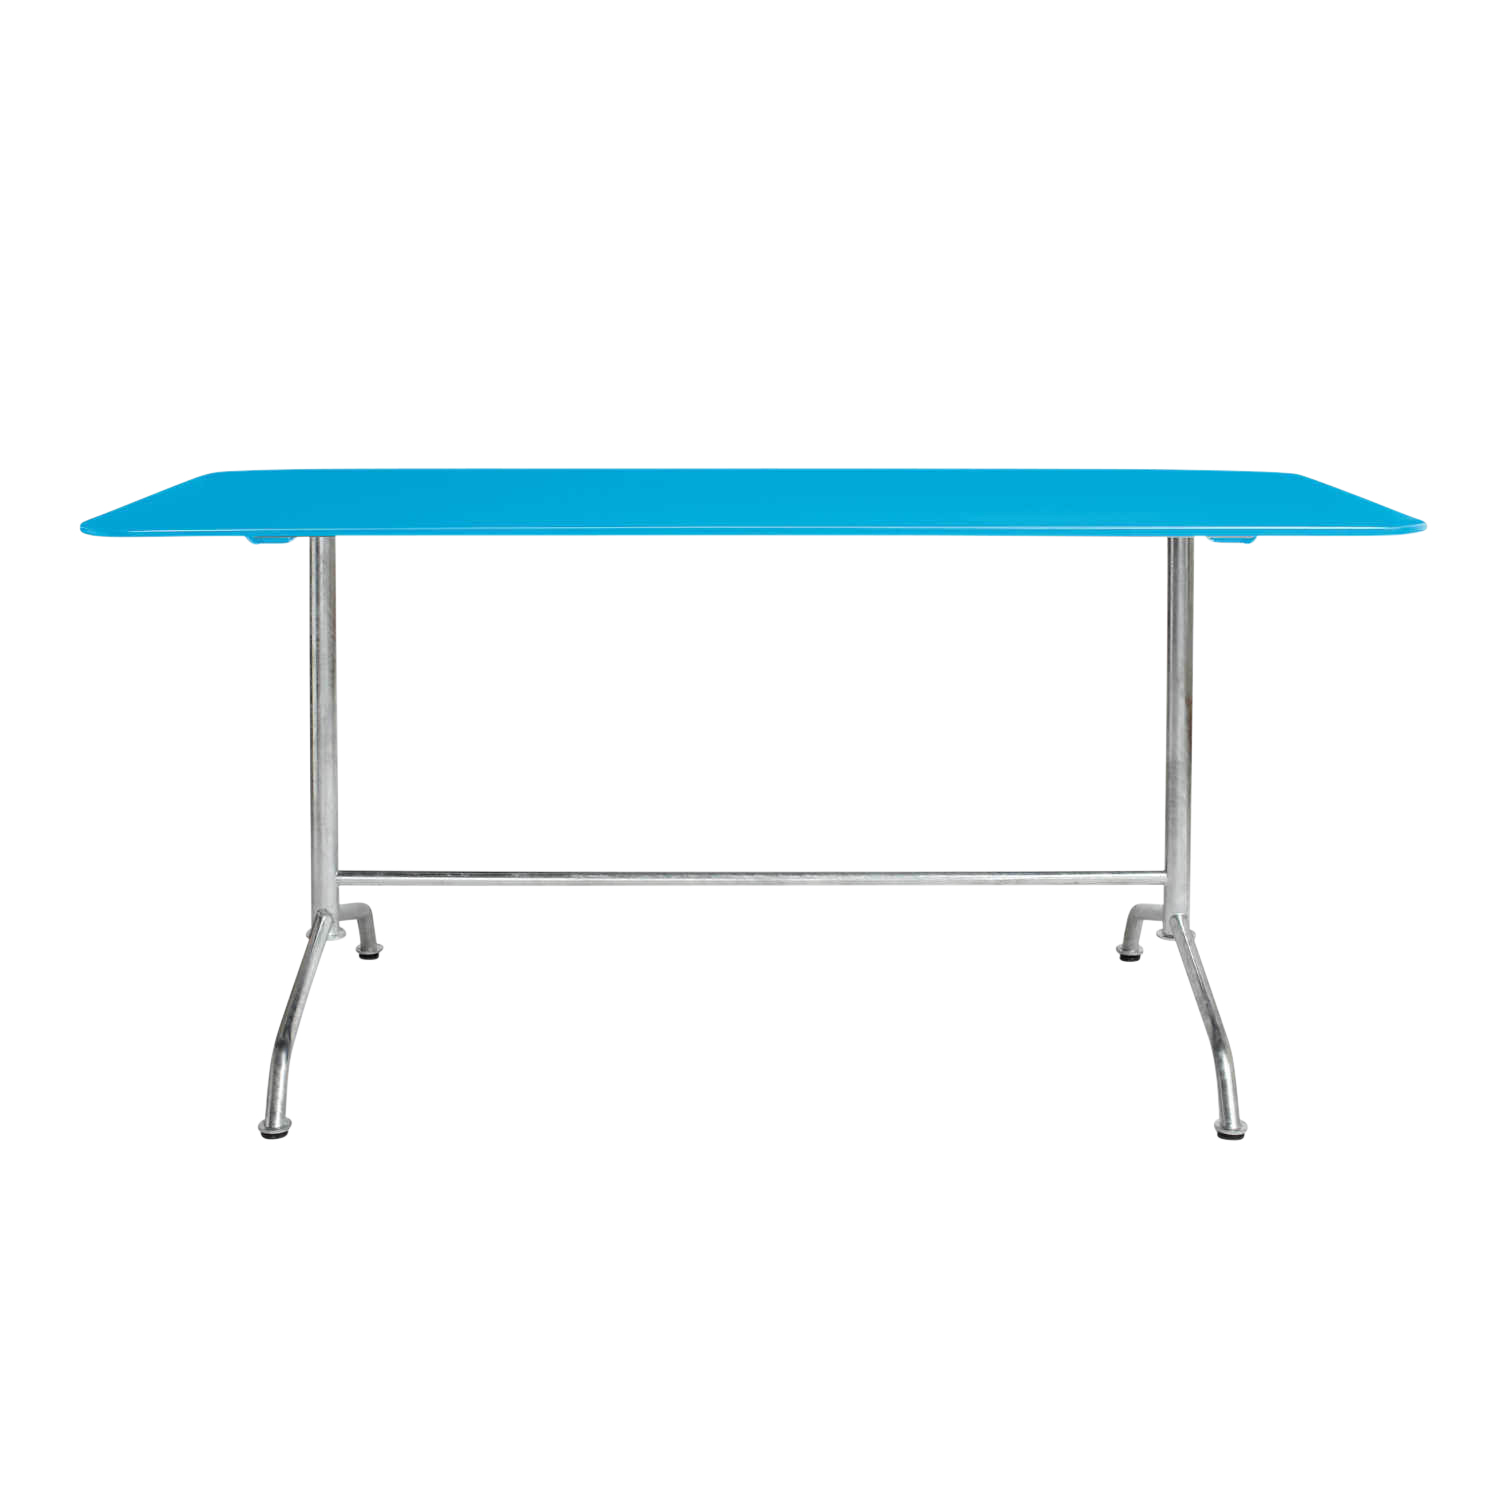 Haefeli Gartentisch, Farbe hellblau ncs s1060b, Grösse ø 70 cm von Embru